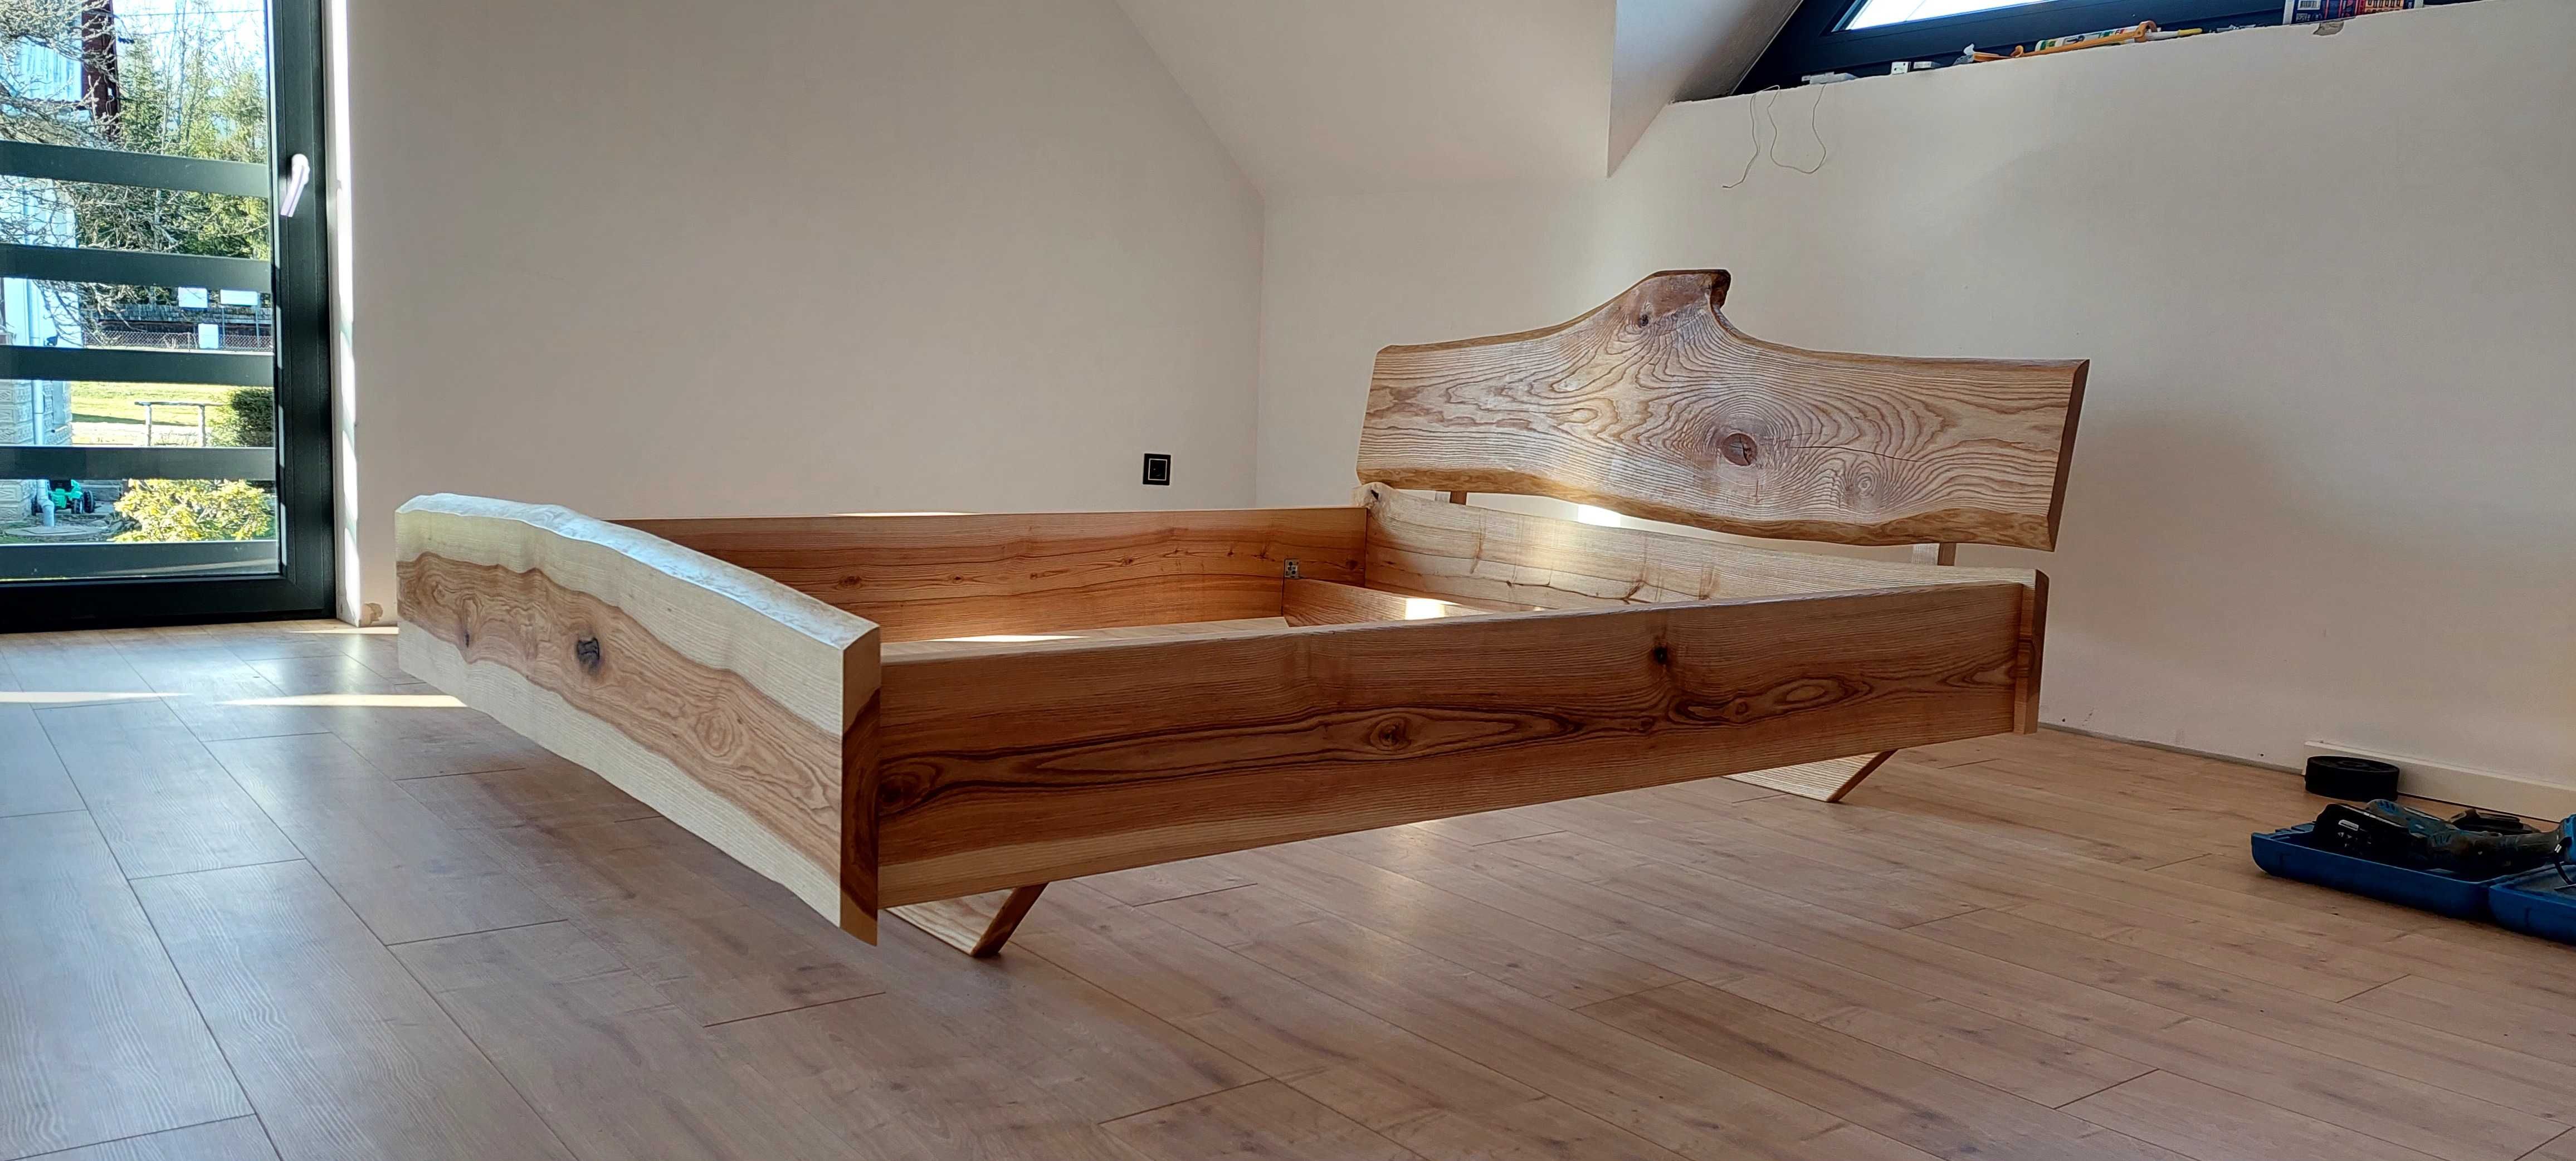 Łóżko drewniane lewitujace